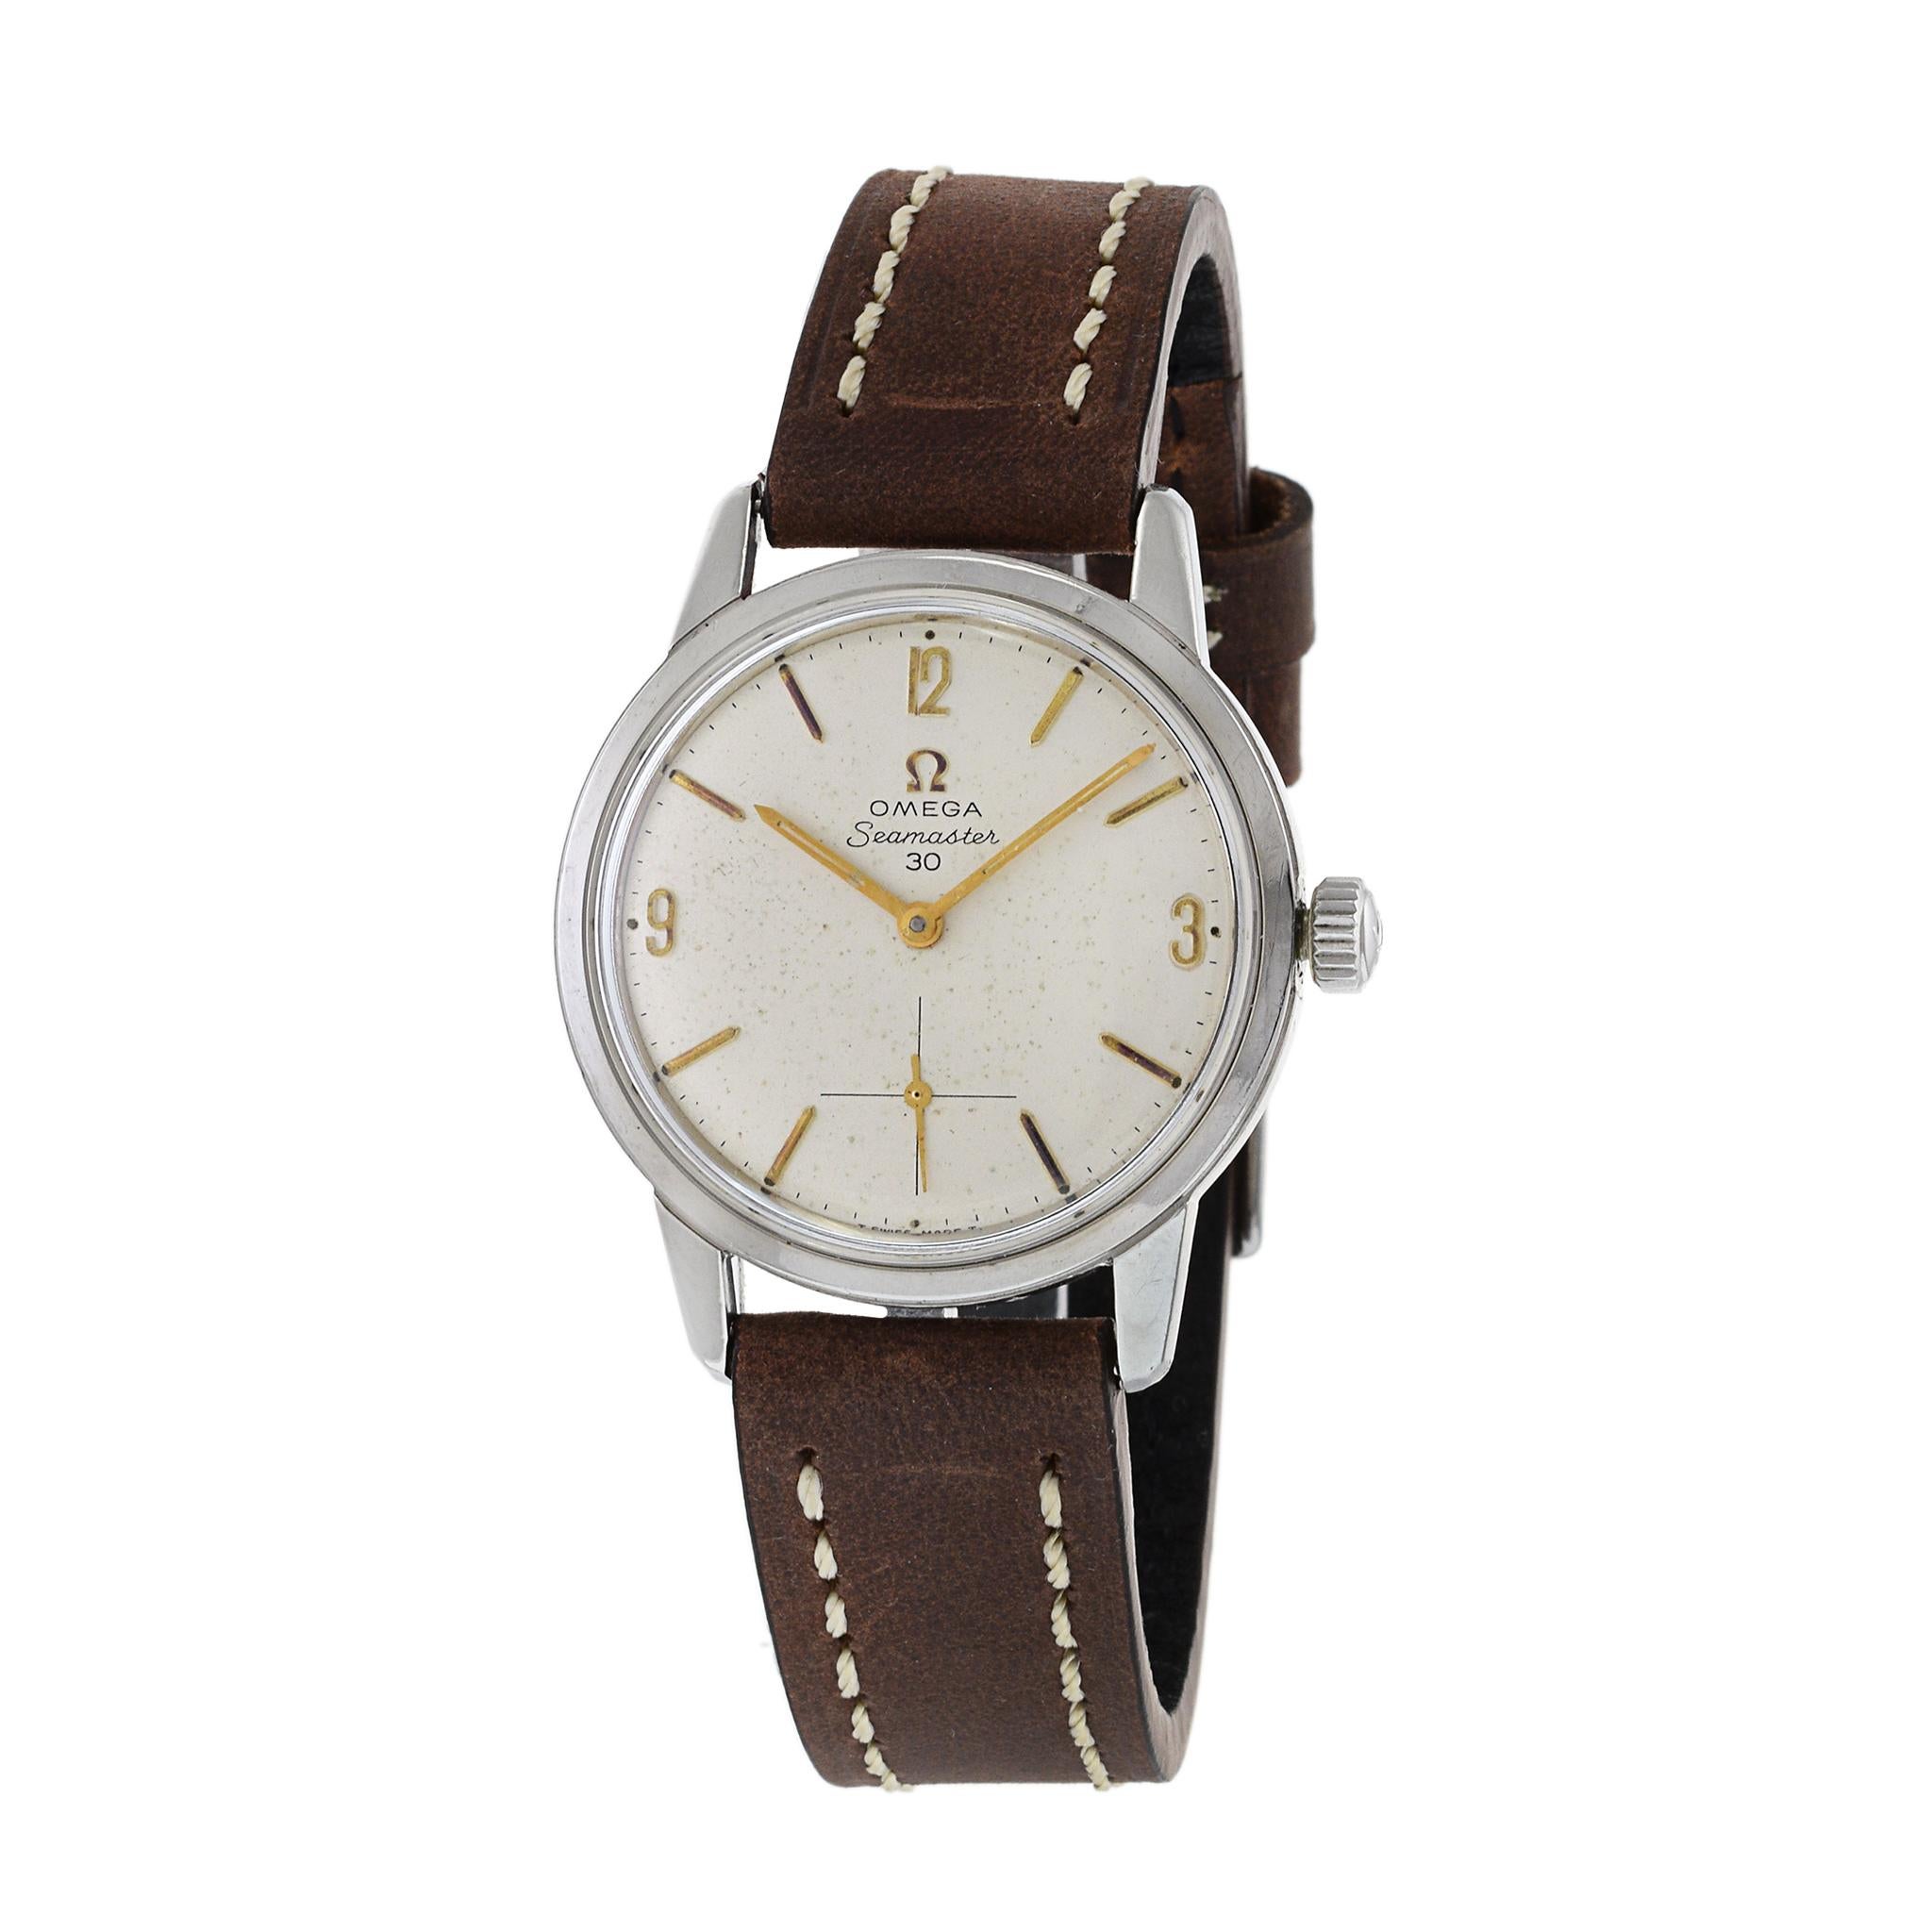 Dies ist eine tadellose 1962 Omega Seamaster 30 Referenz 125.003-62. Diese Uhr hat als Jumbo-Größe in den frühen 1960er Jahren bei 35mm. Das Gehäuse ist unpoliert und das Zifferblatt ist original. 

Diese Uhr wird von einem Omega-Kaliber 269 mit 17